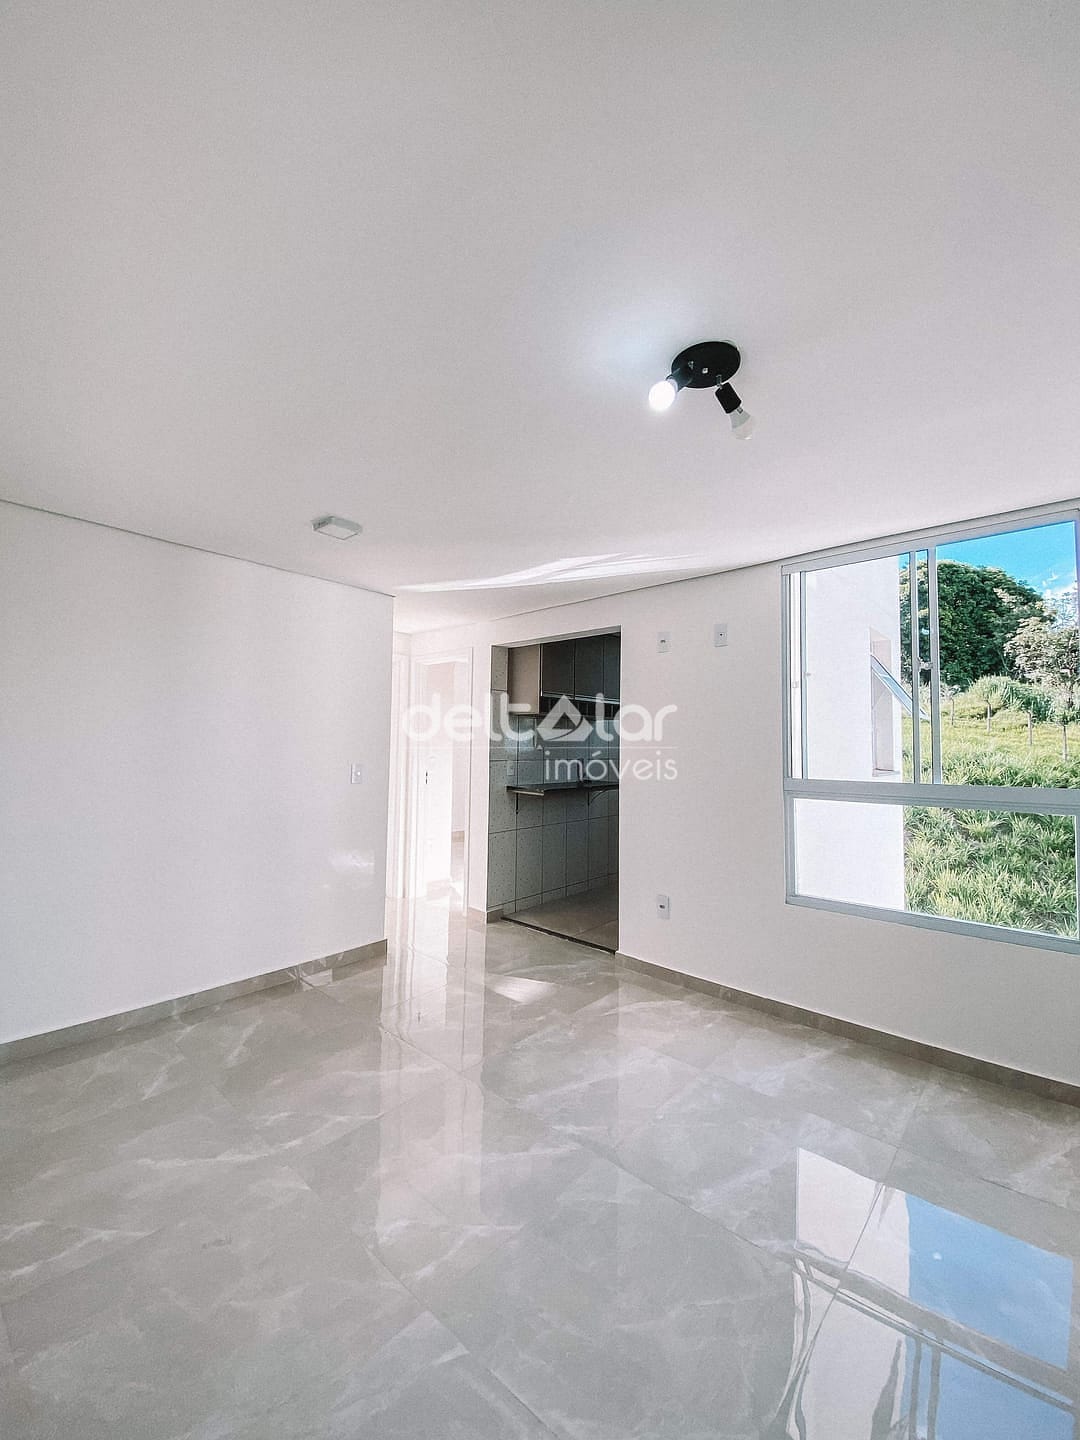 Apartamento em Planalto, Belo Horizonte/MG de 50m² 2 quartos para locação R$ 1.897,00/mes